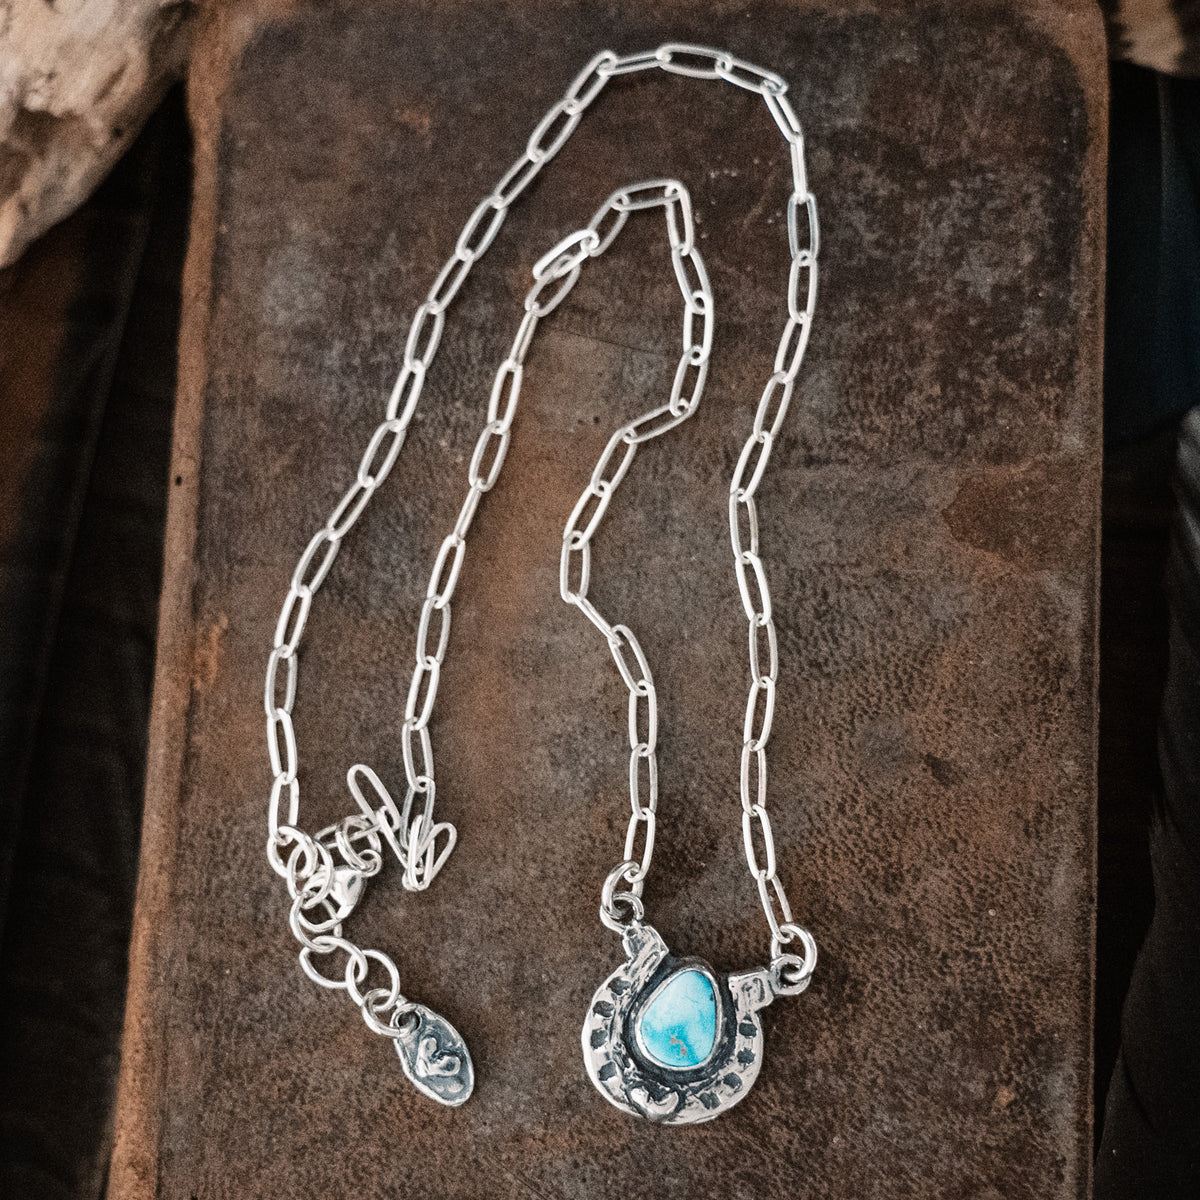 Horseshoe Turquoise Necklace